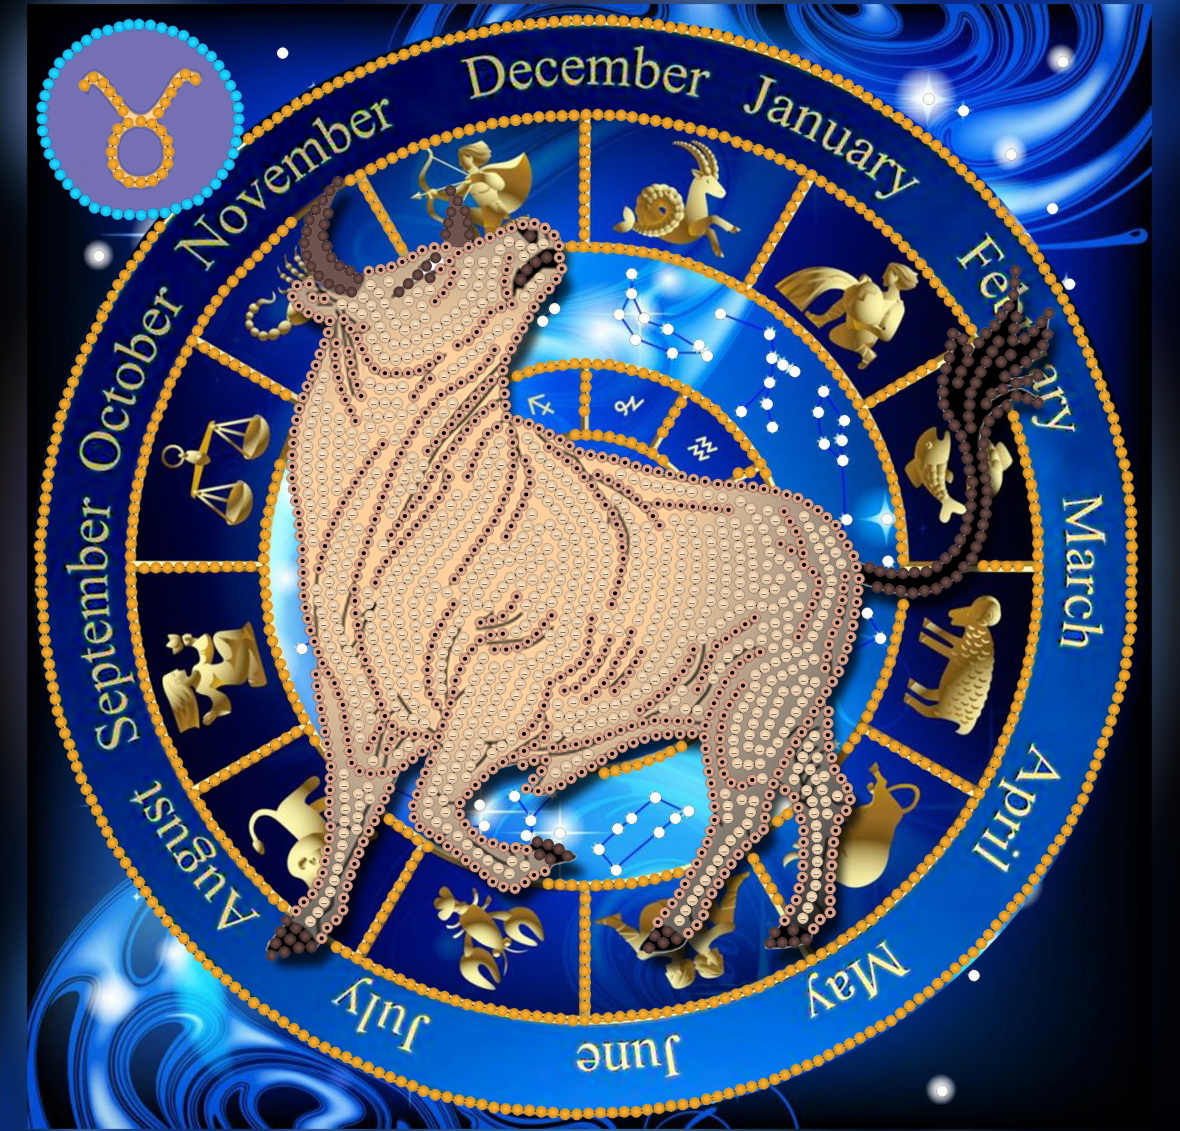 Интересные подарки на Новый год 2021 по знакам зодиака